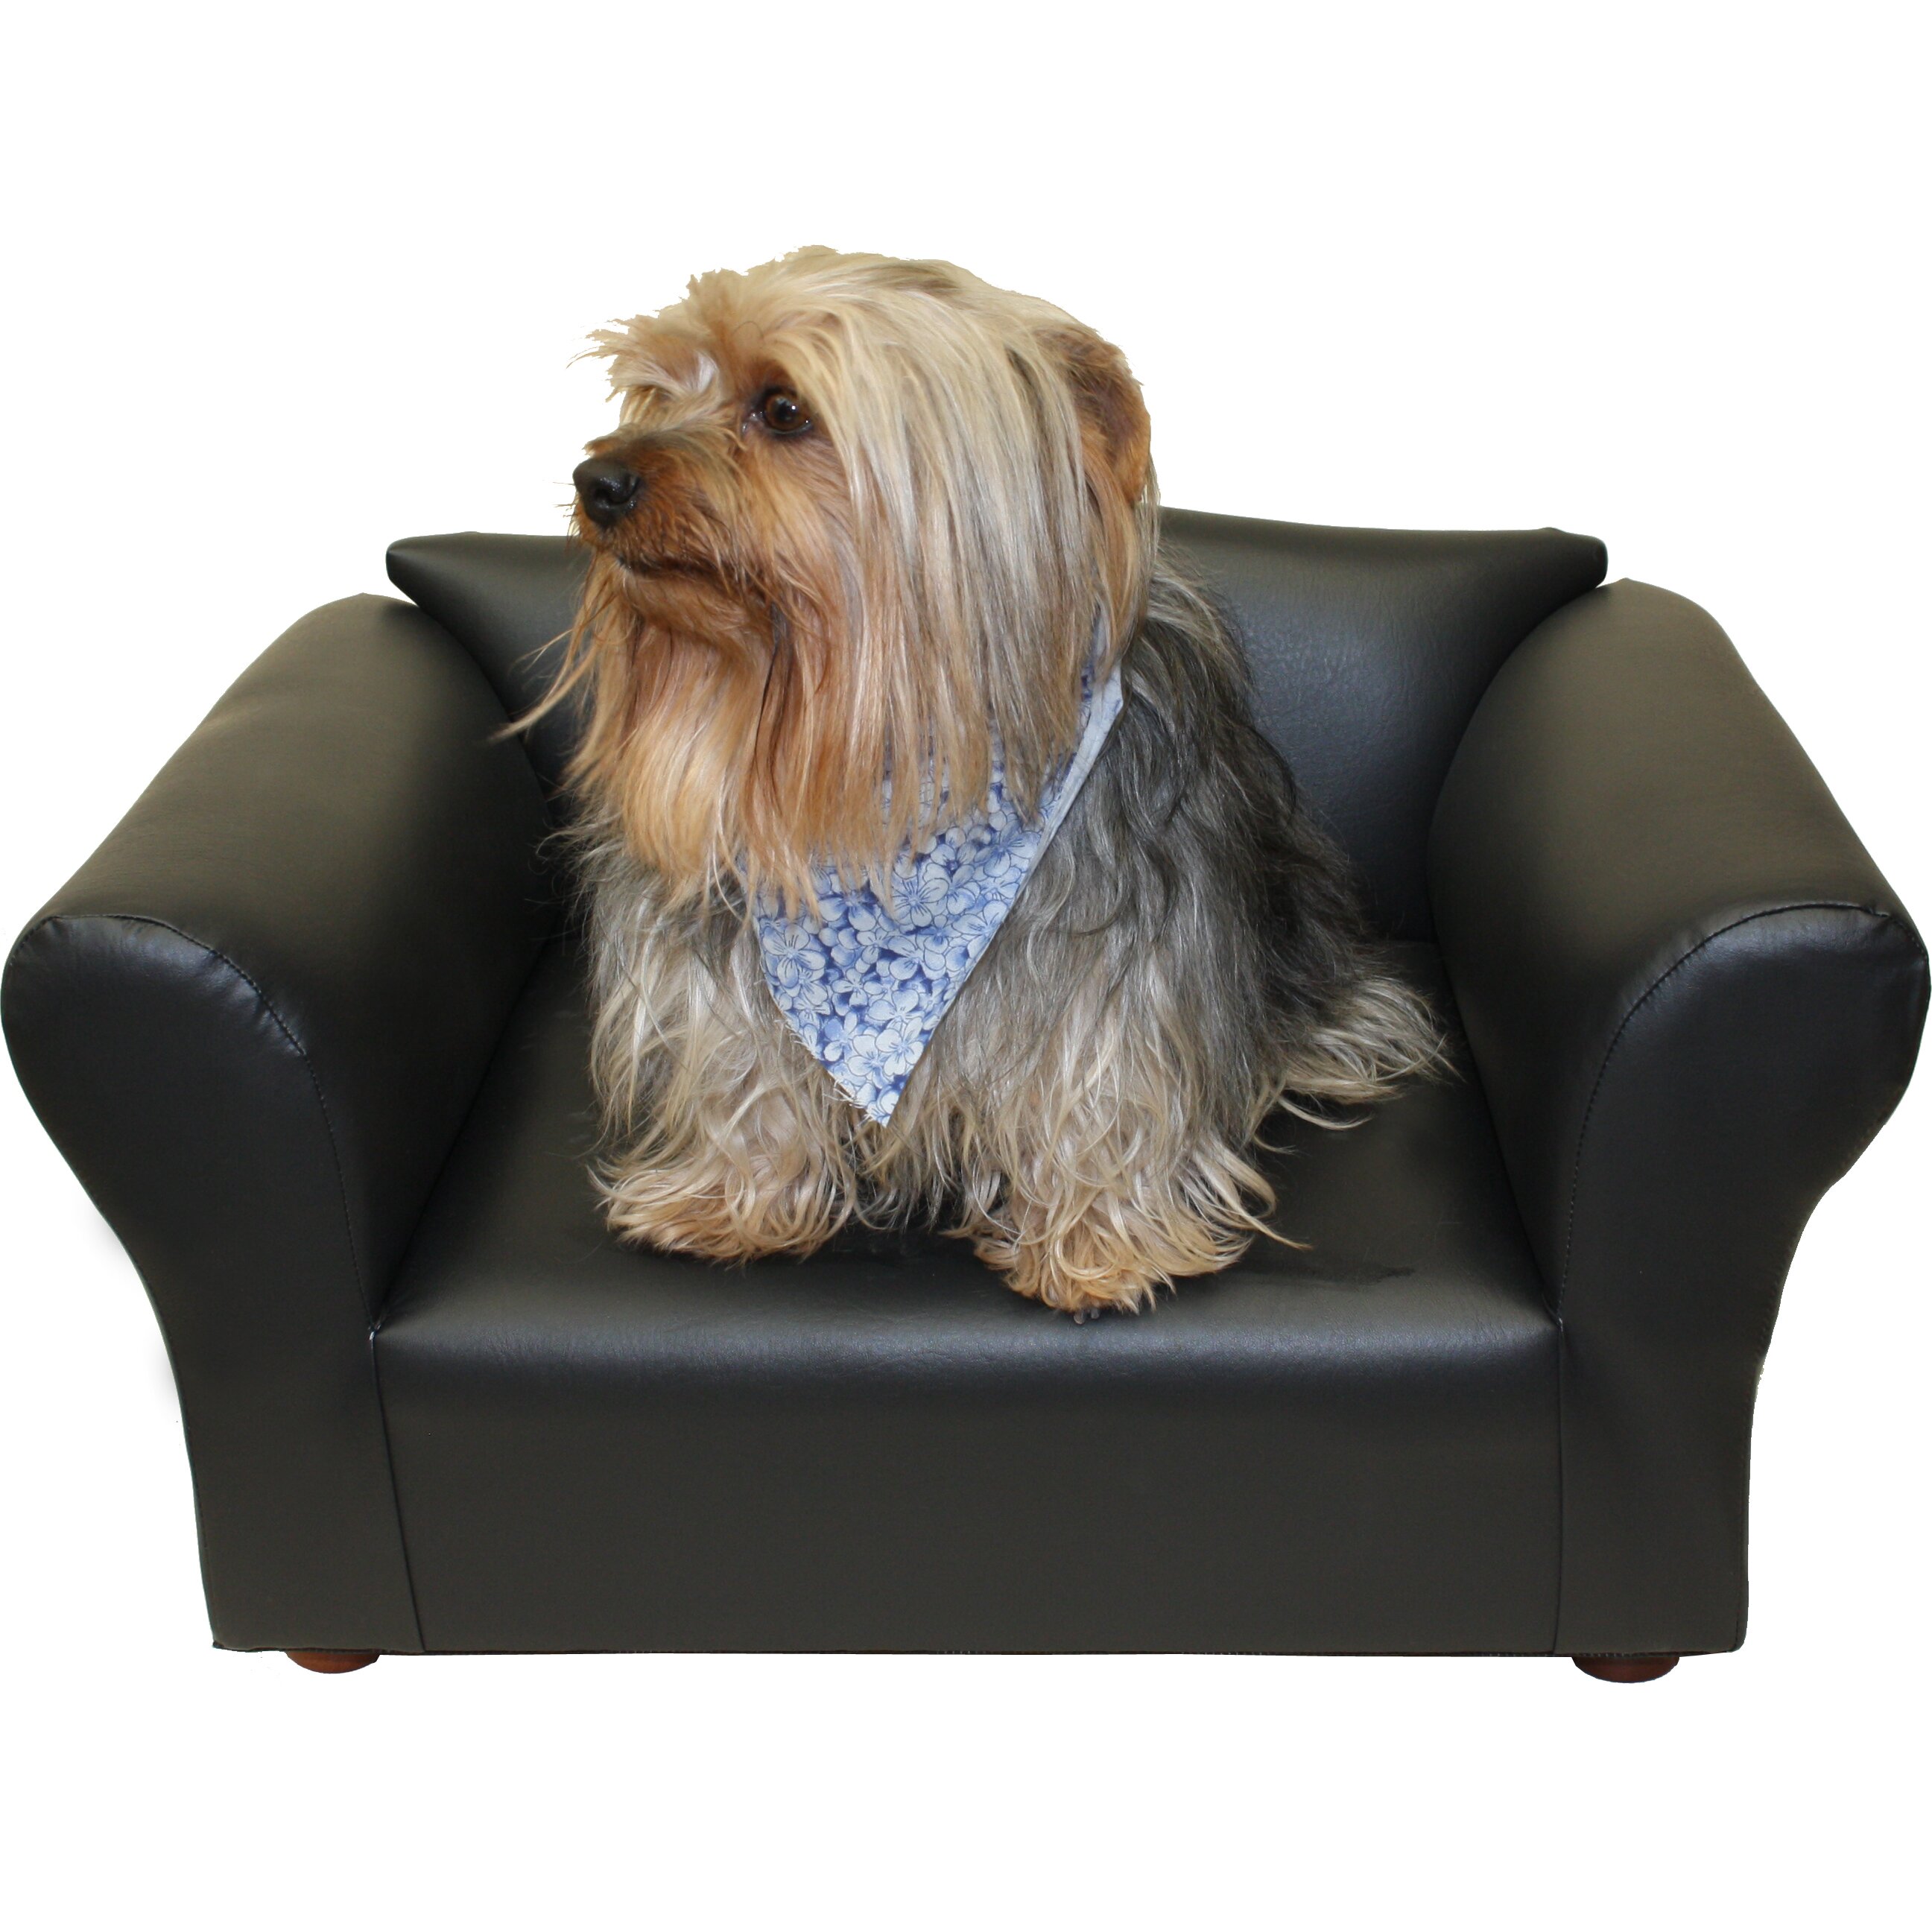 Keet Mini Dog Sofa & Reviews   Wayfair